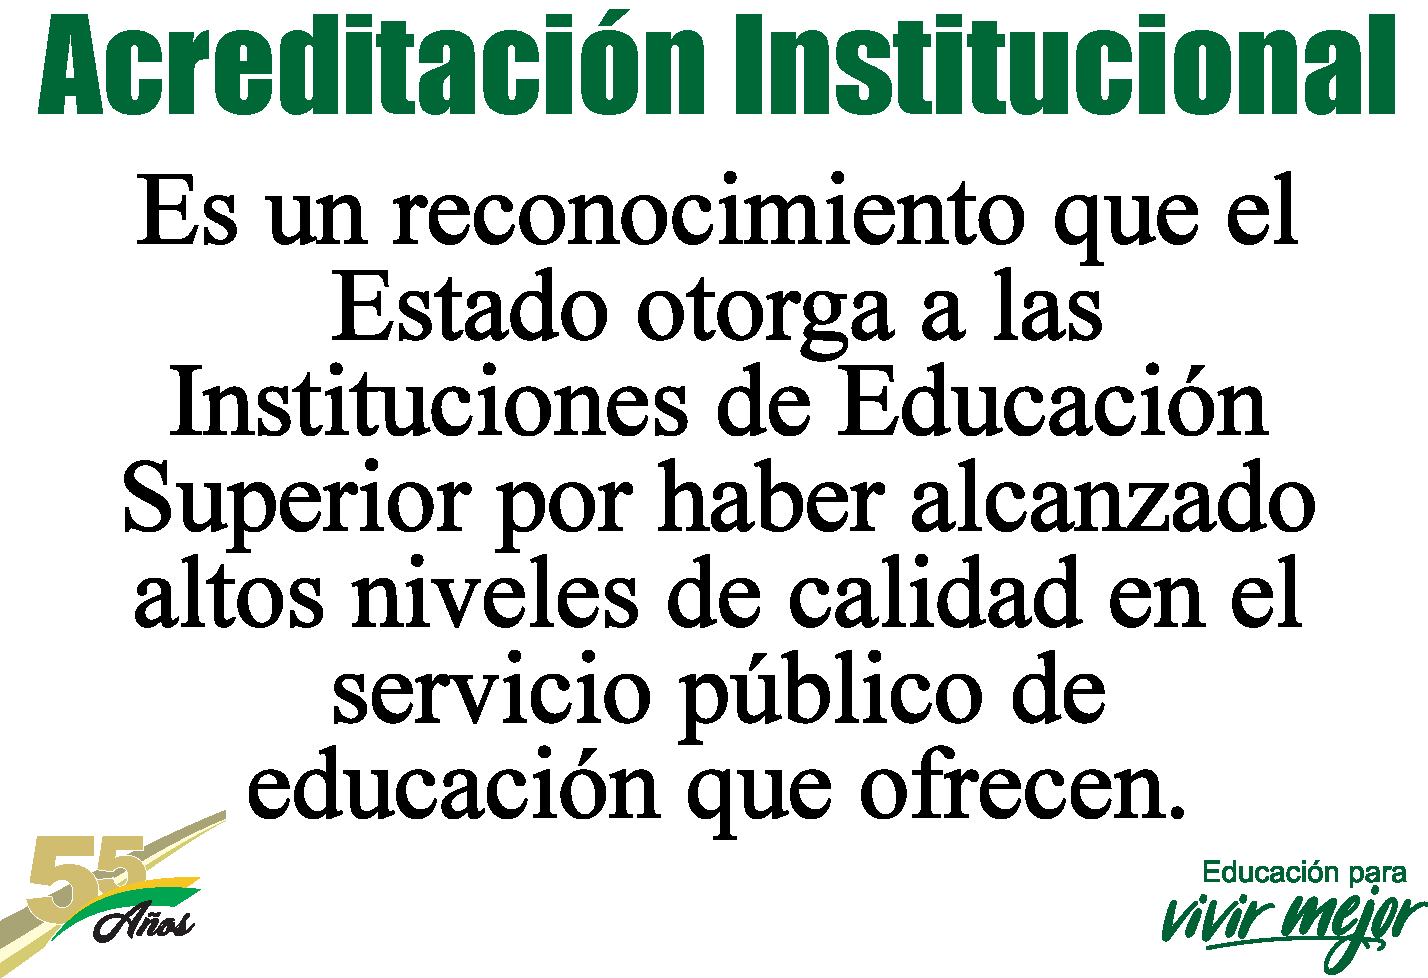 Acreditación Institucional 2019